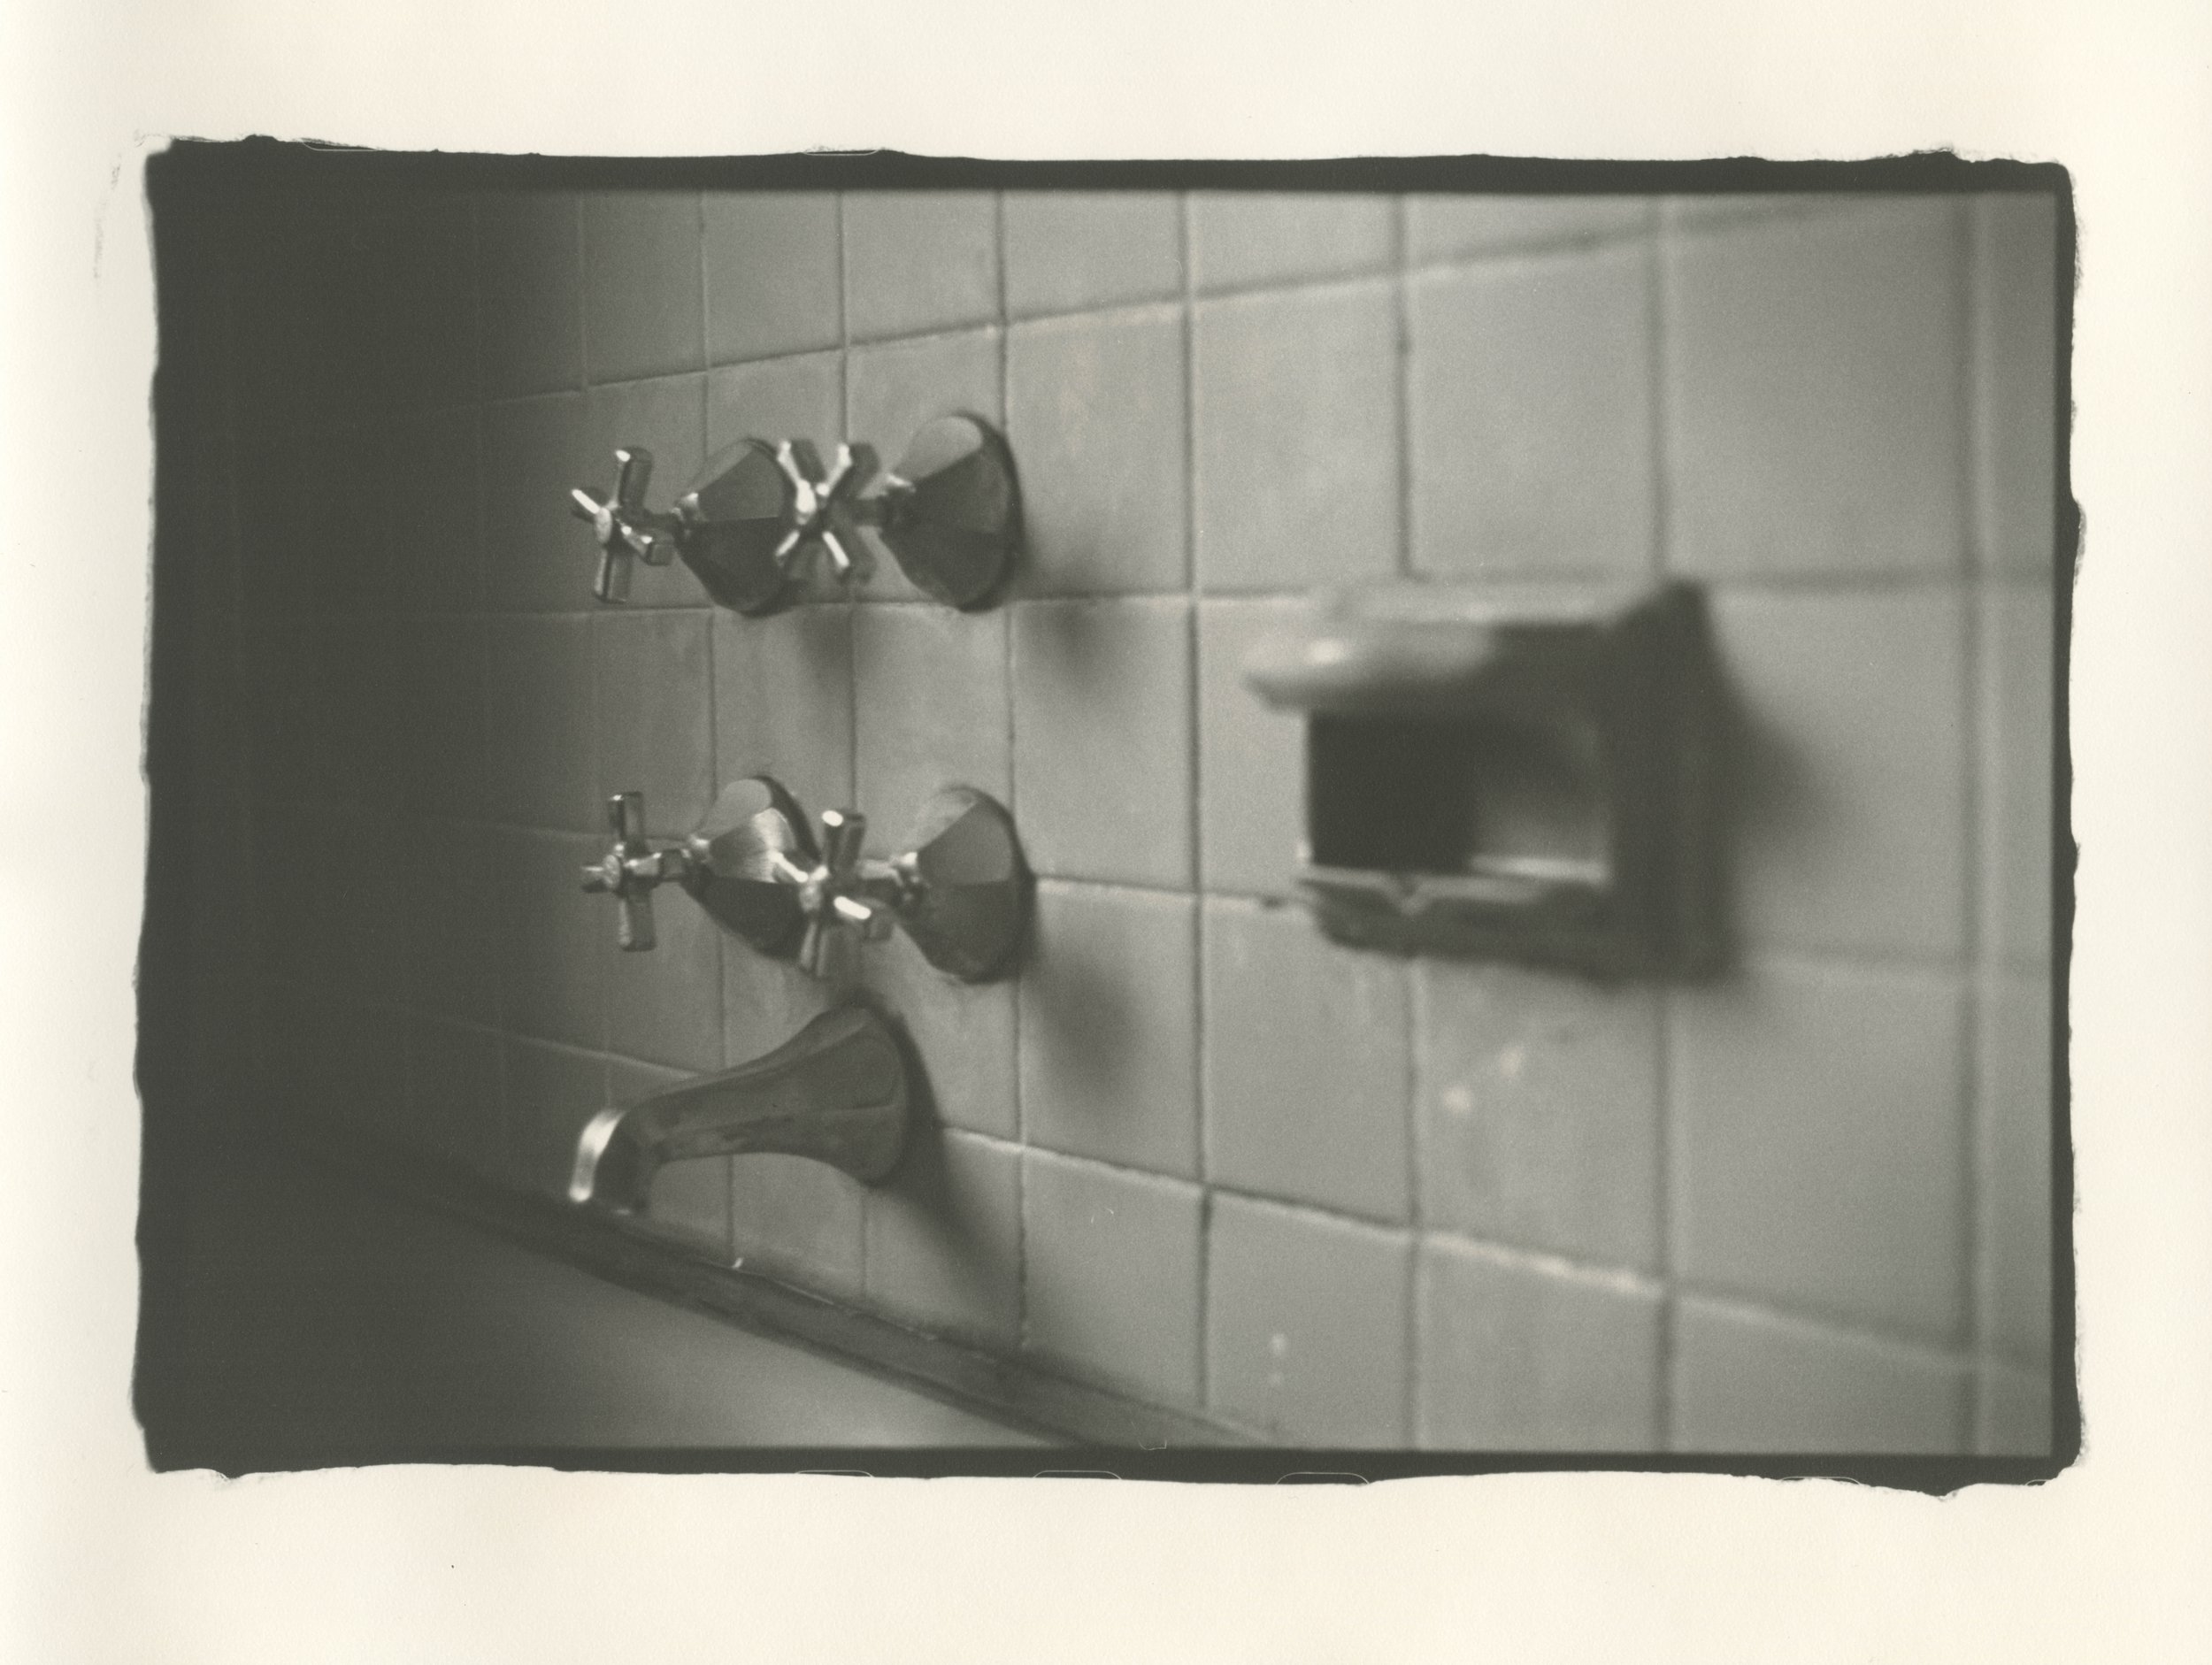 Bathtub Shower, Fall, 2021